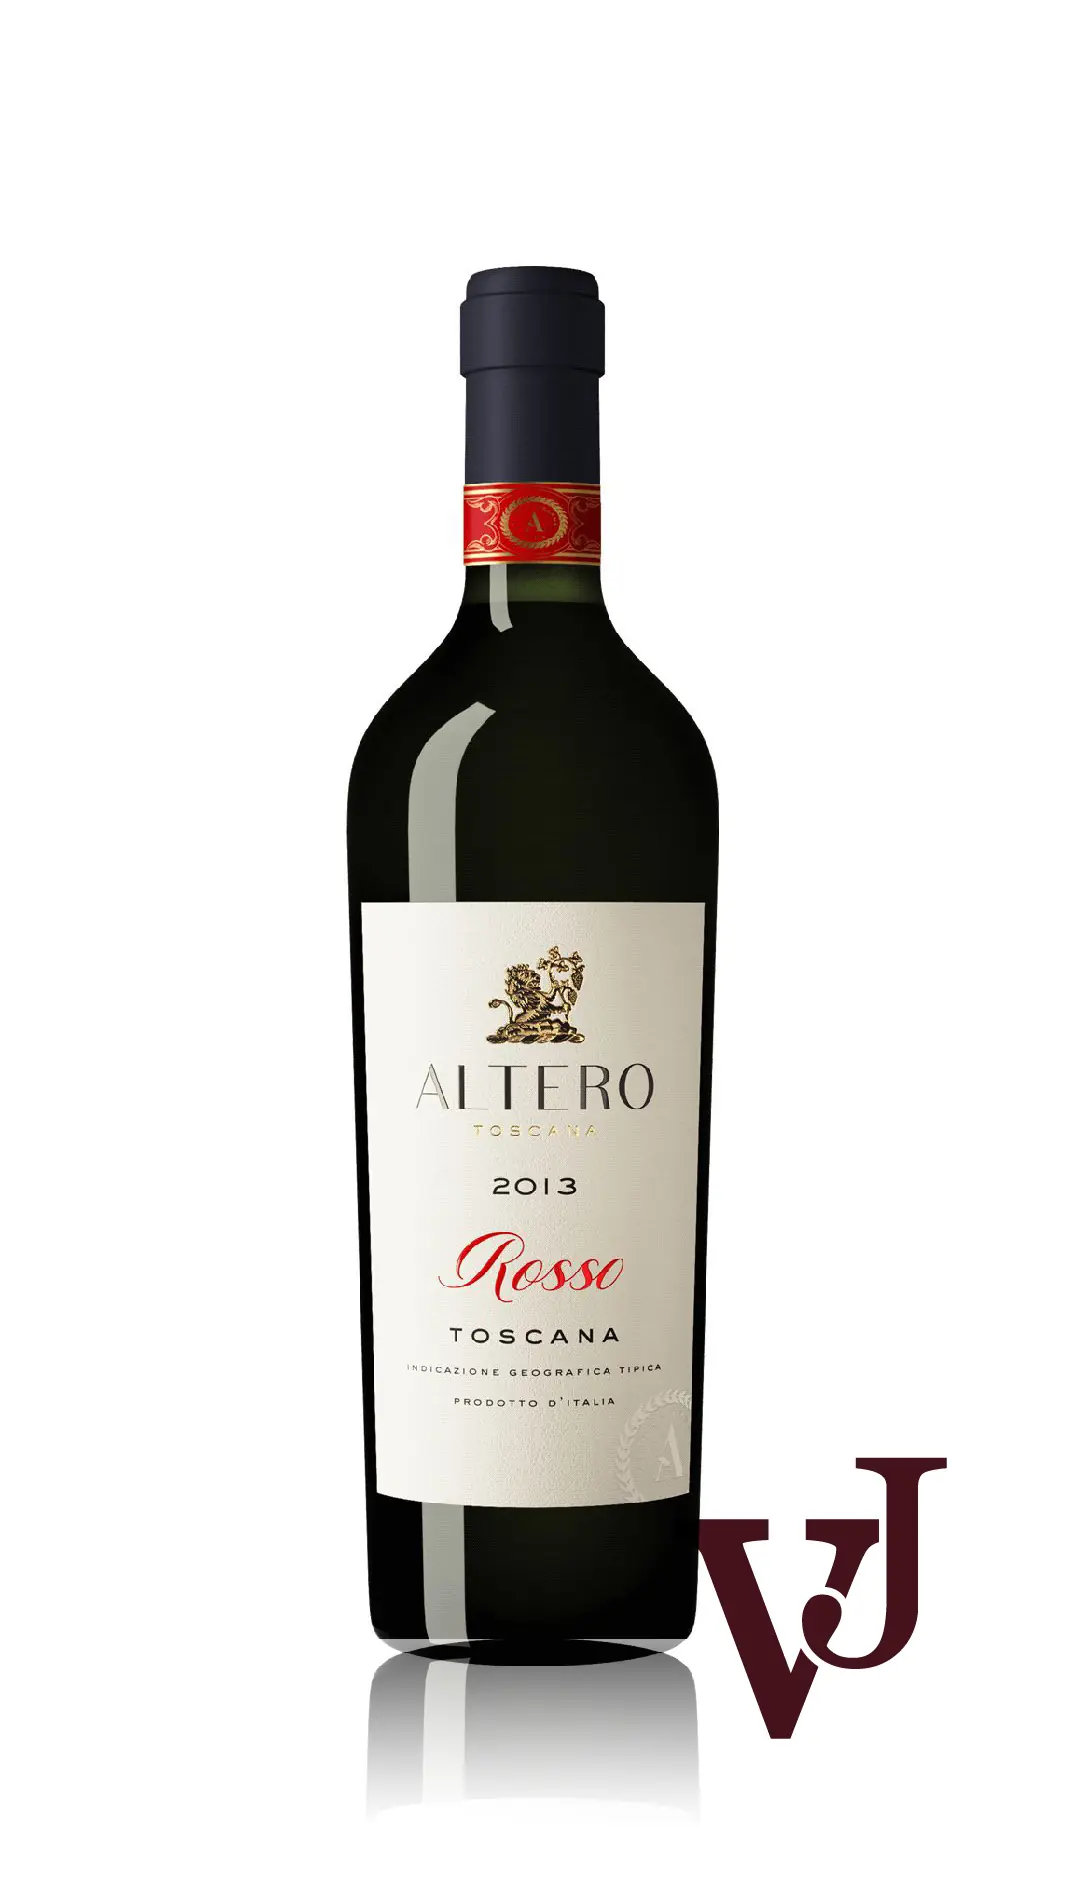 Rött Vin - Altero Toscana 2013 artikel nummer 5664301 från producenten Cantinetta Vini från Italien - Vinjournalen.se